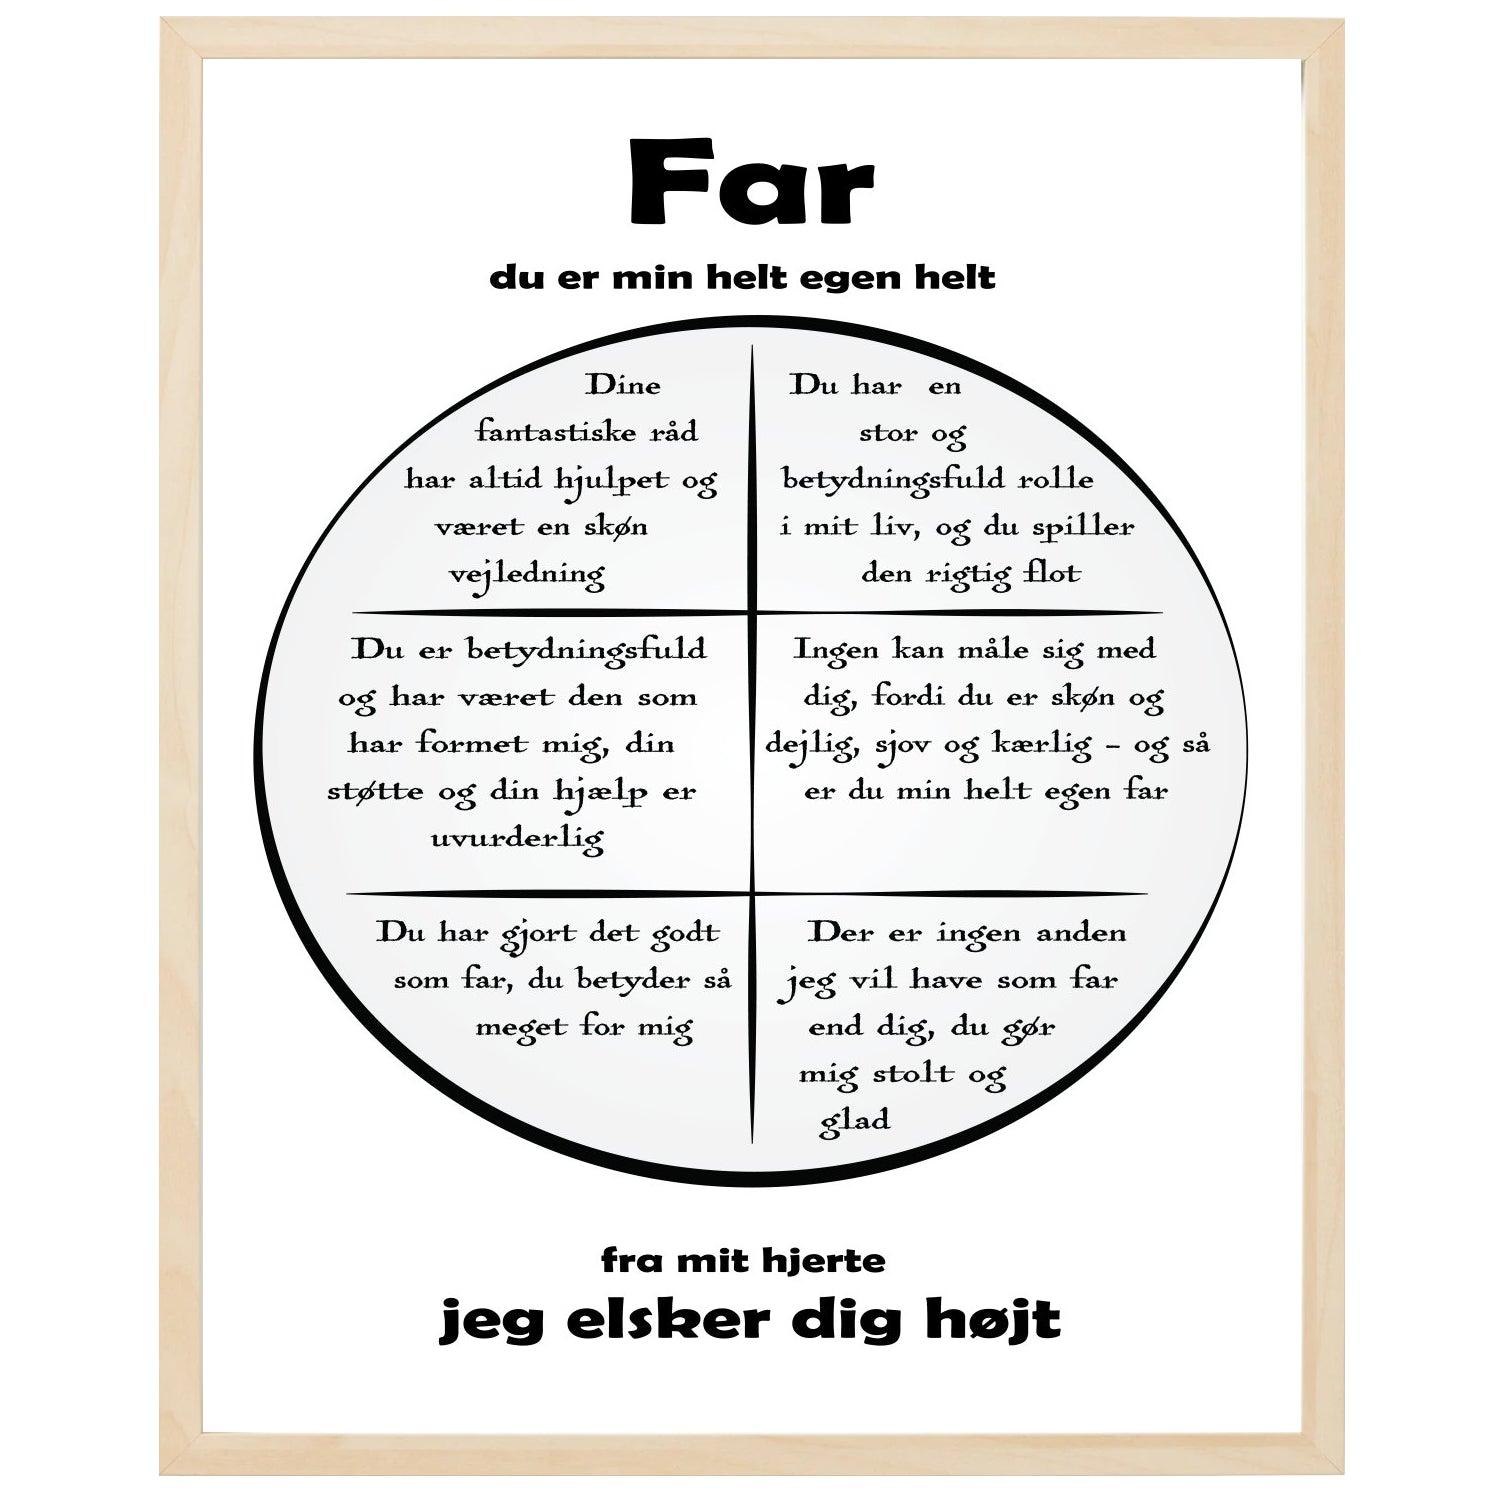 En plakat med overskriften Far, en rustik cirkel og indeni cirklen mange positive sætninger som beskriver en Far